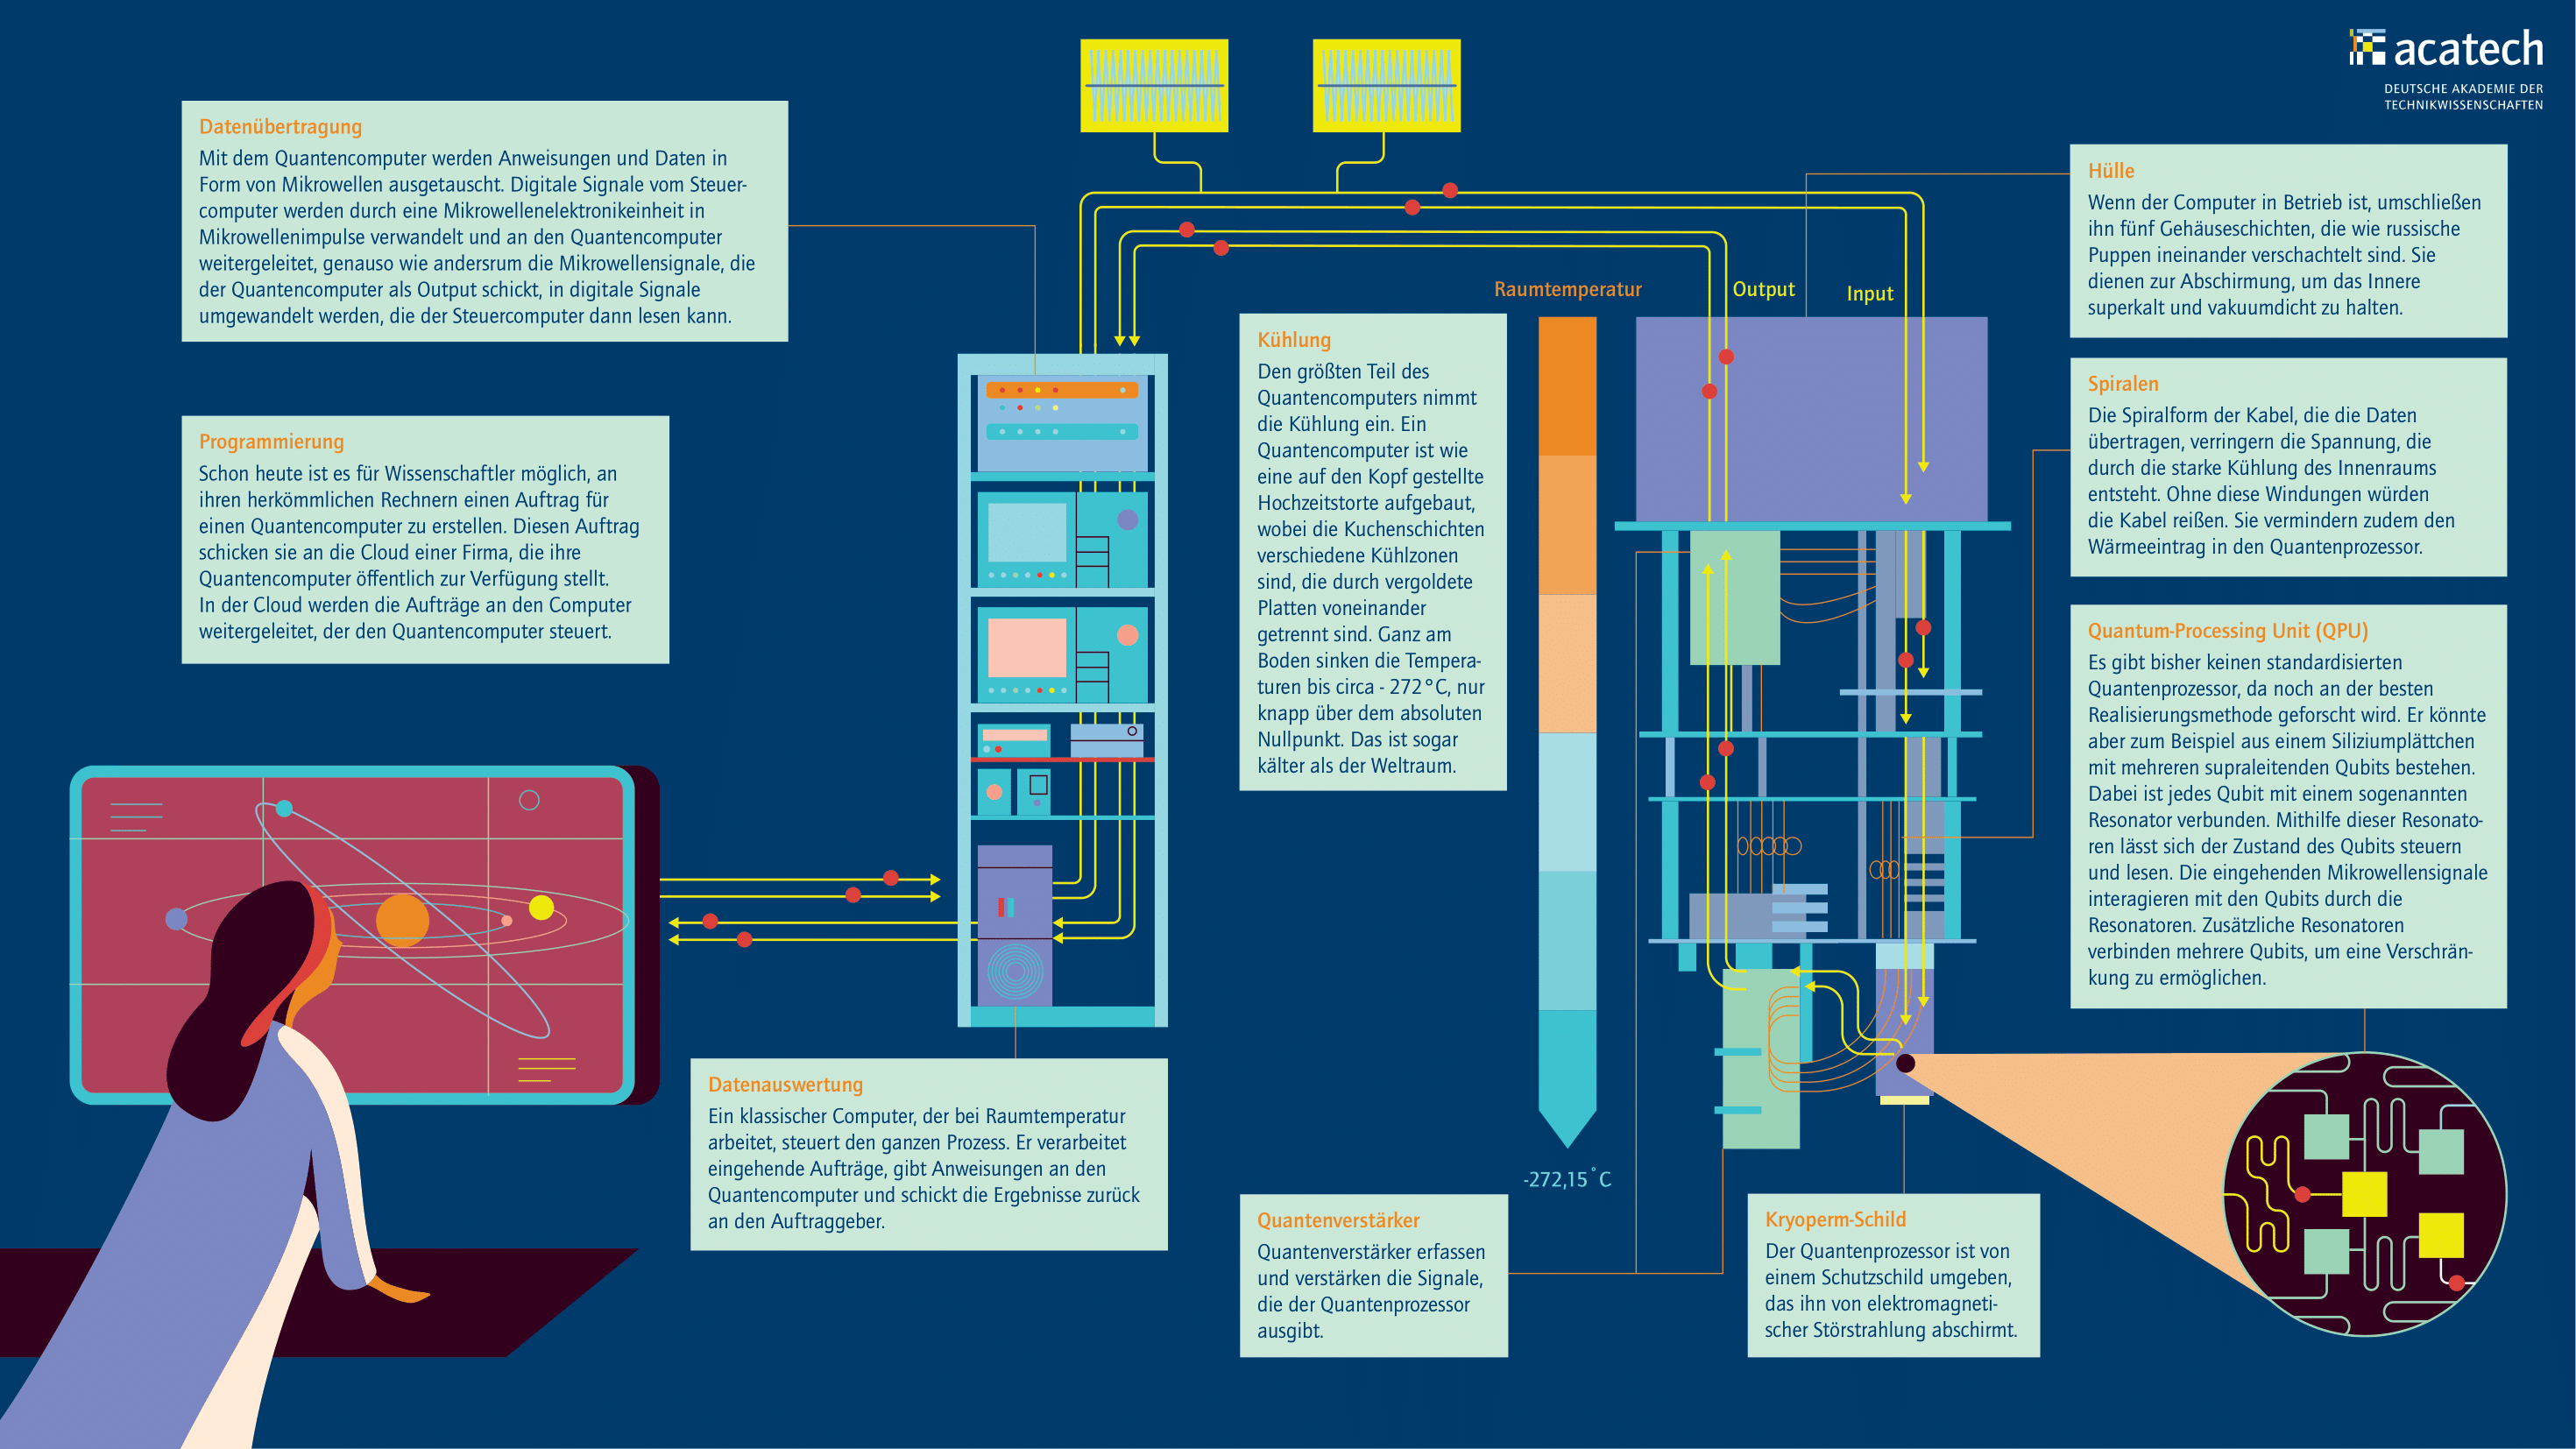 Grafik mit detaillierter Darstellung der Funktionsweise des Quantencomputers